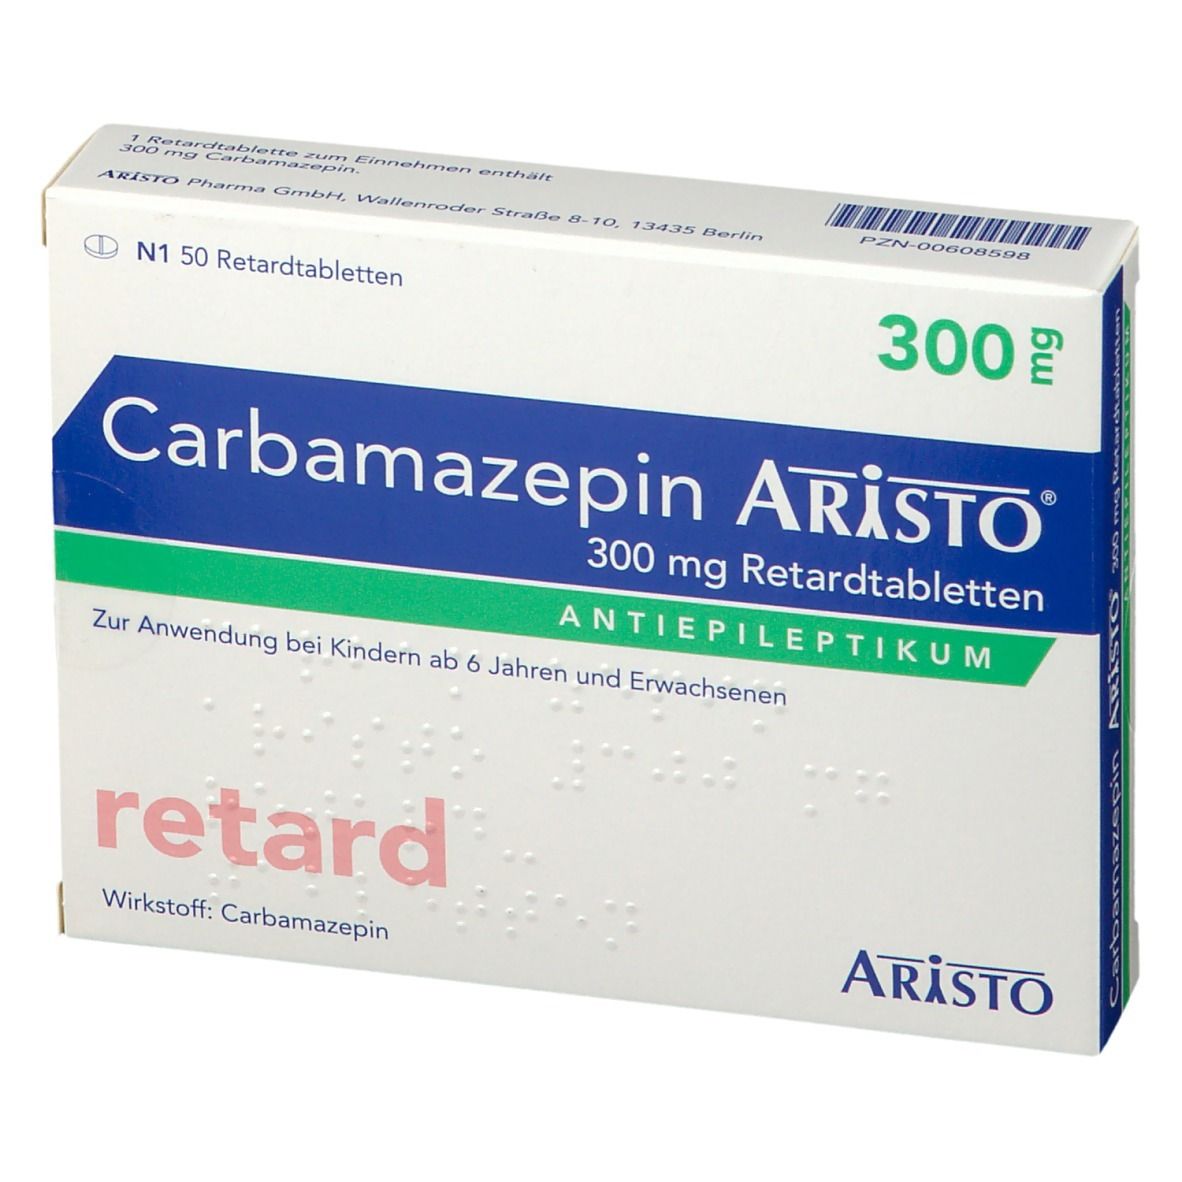 Carbamazepin Aristo® 300 mg